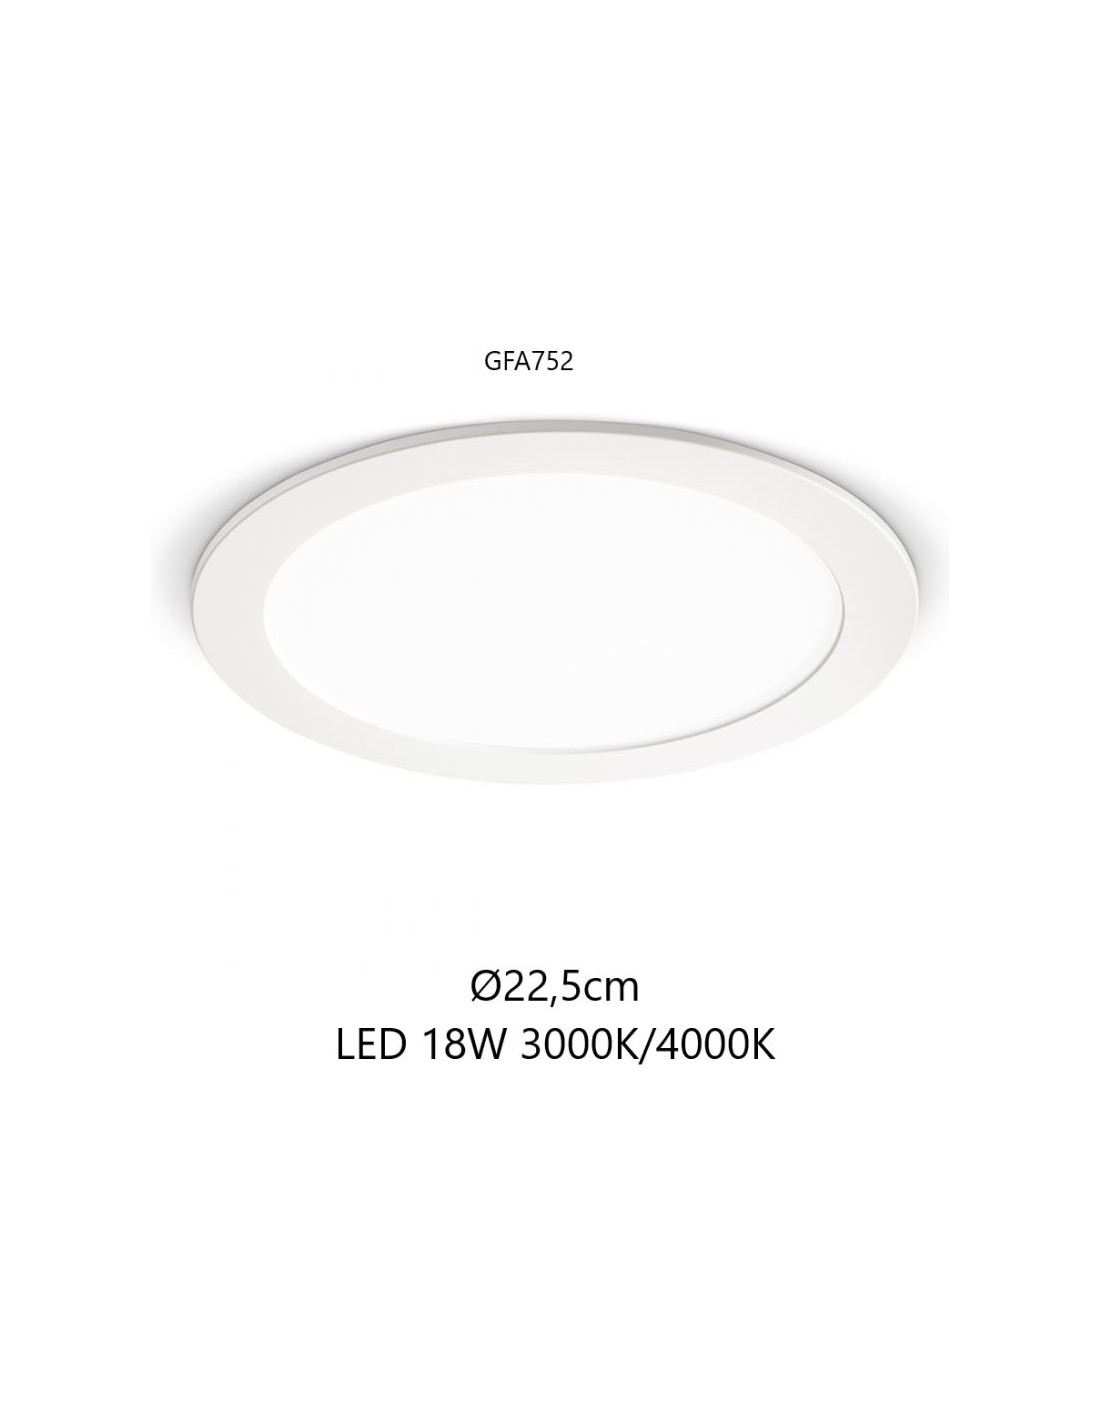 Faretto incasso Gea Led GFA752N 18W LED termoplastico lampada soffitto  cartongesso interno